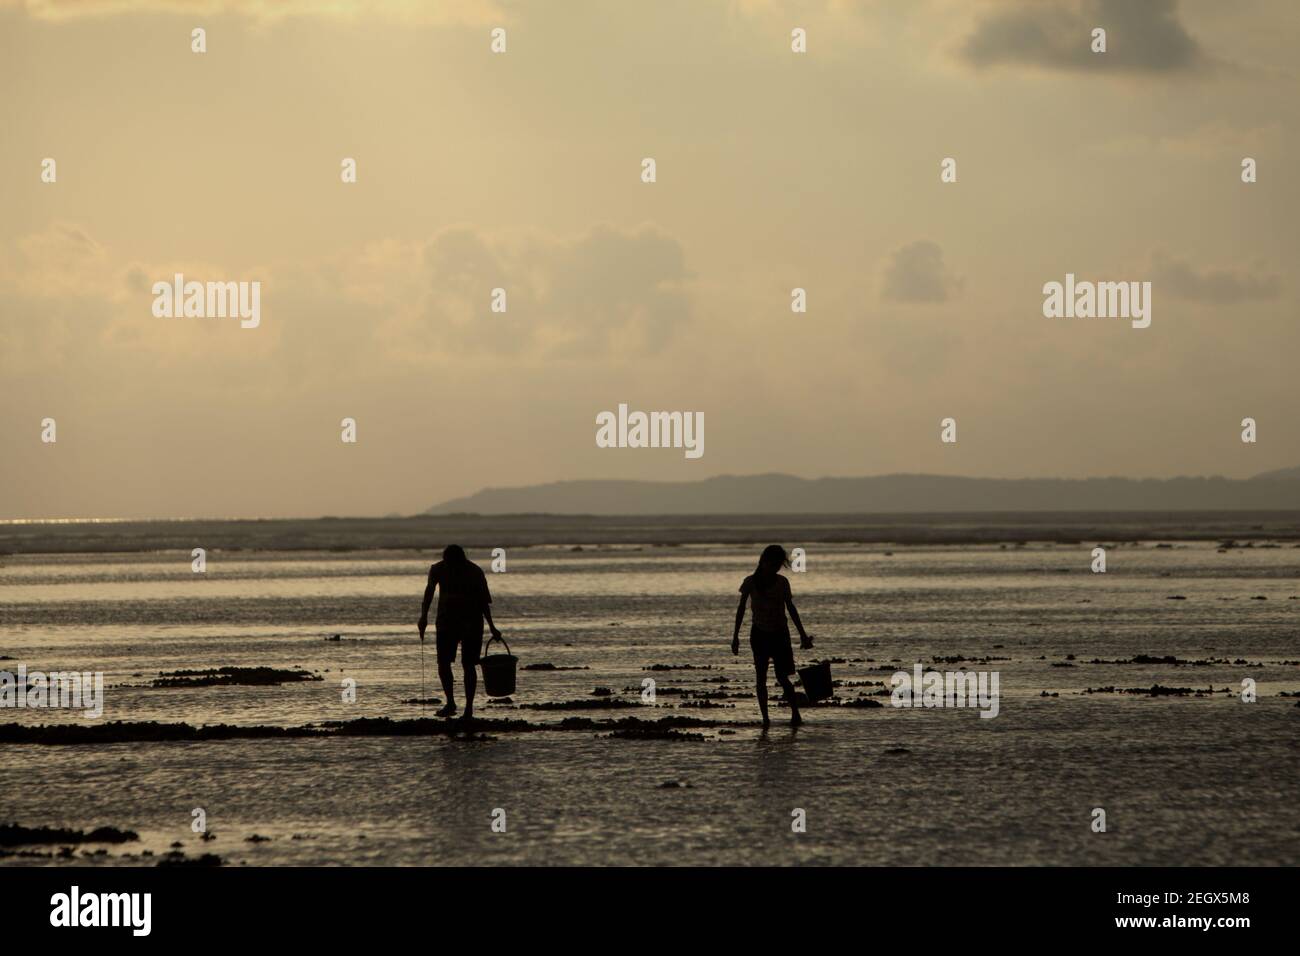 Les jeunes femmes ont silhoueté comme elles marchent sur la plage rocheuse pendant la marée basse, transportant des seaux en plastique pour recueillir des produits de la mer. Banque D'Images